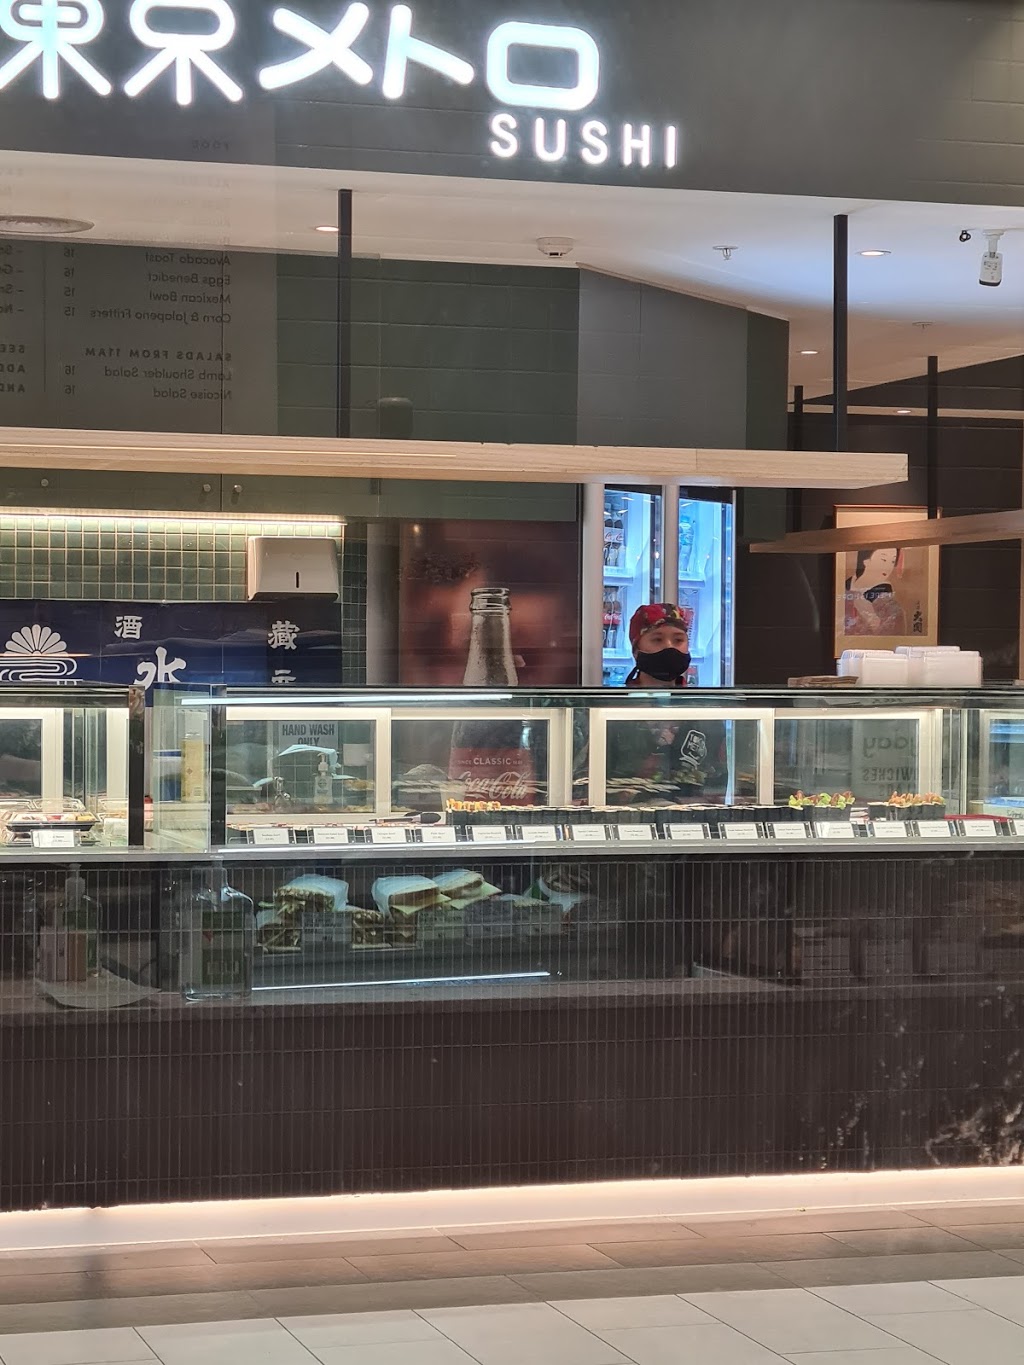 Tokyo Metro Sushi Express | cafe | 742 Toorak Rd, Hawthorn East VIC 3123, Australia